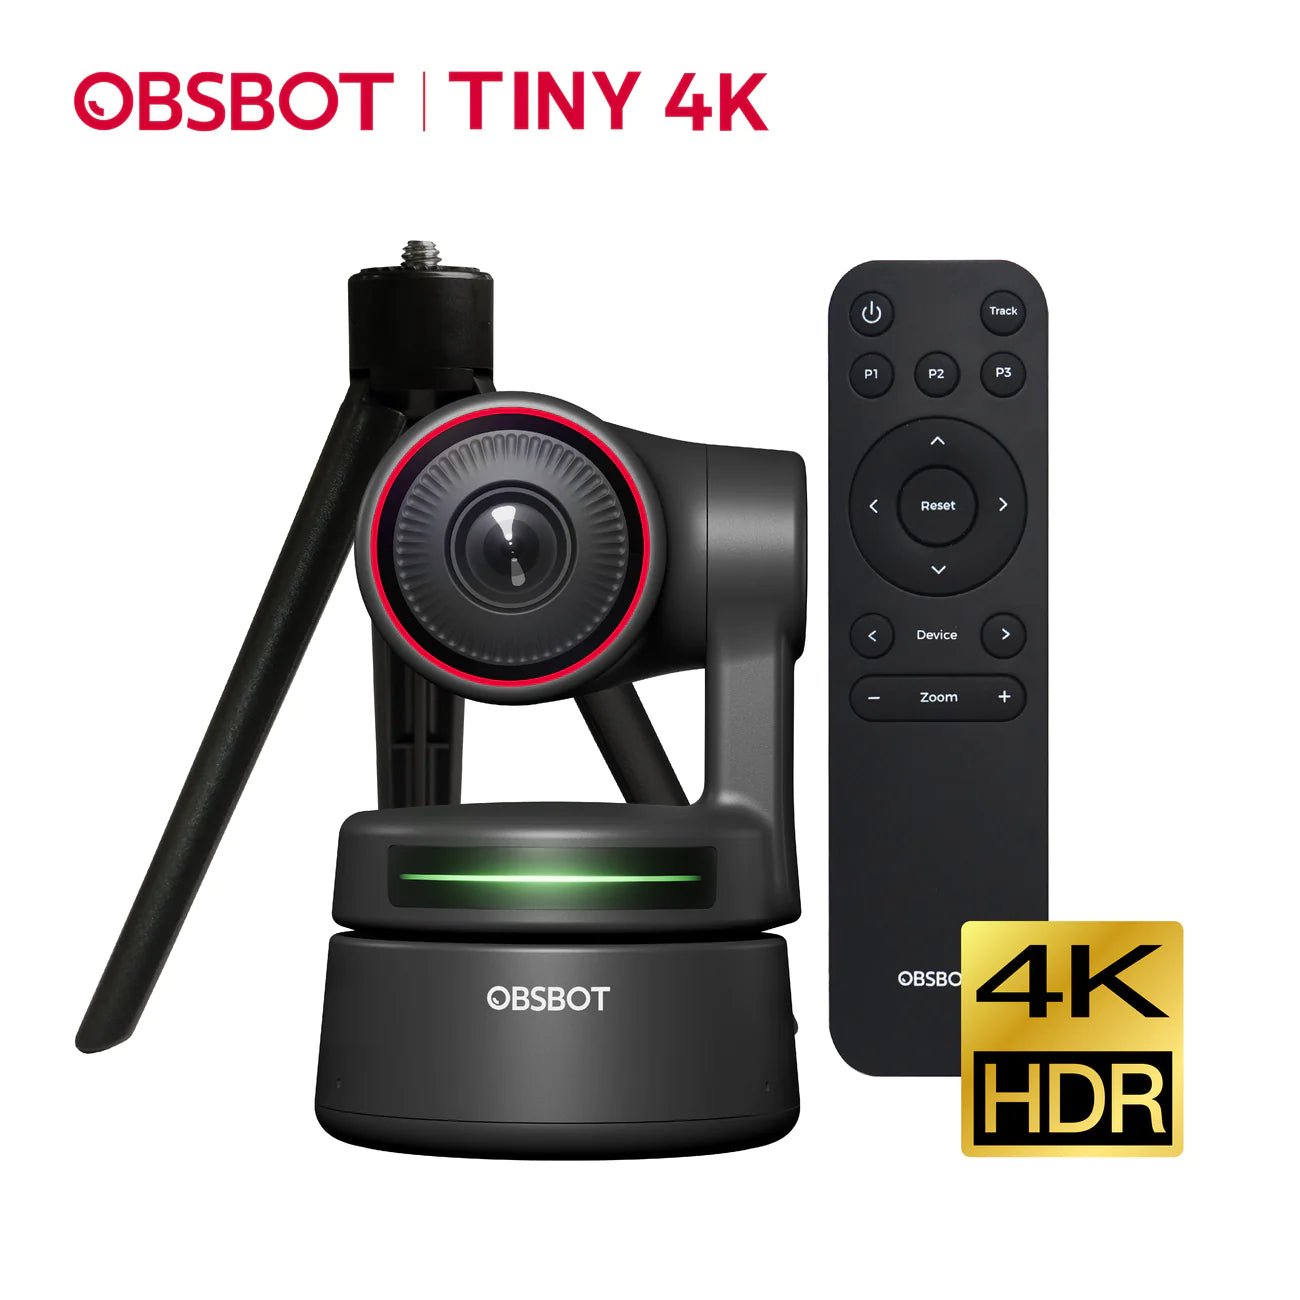 OBSBOT Tiny 4K｜AI人臉辨識與人物自動追蹤的PTZ網路攝影機+遙控器+三腳架